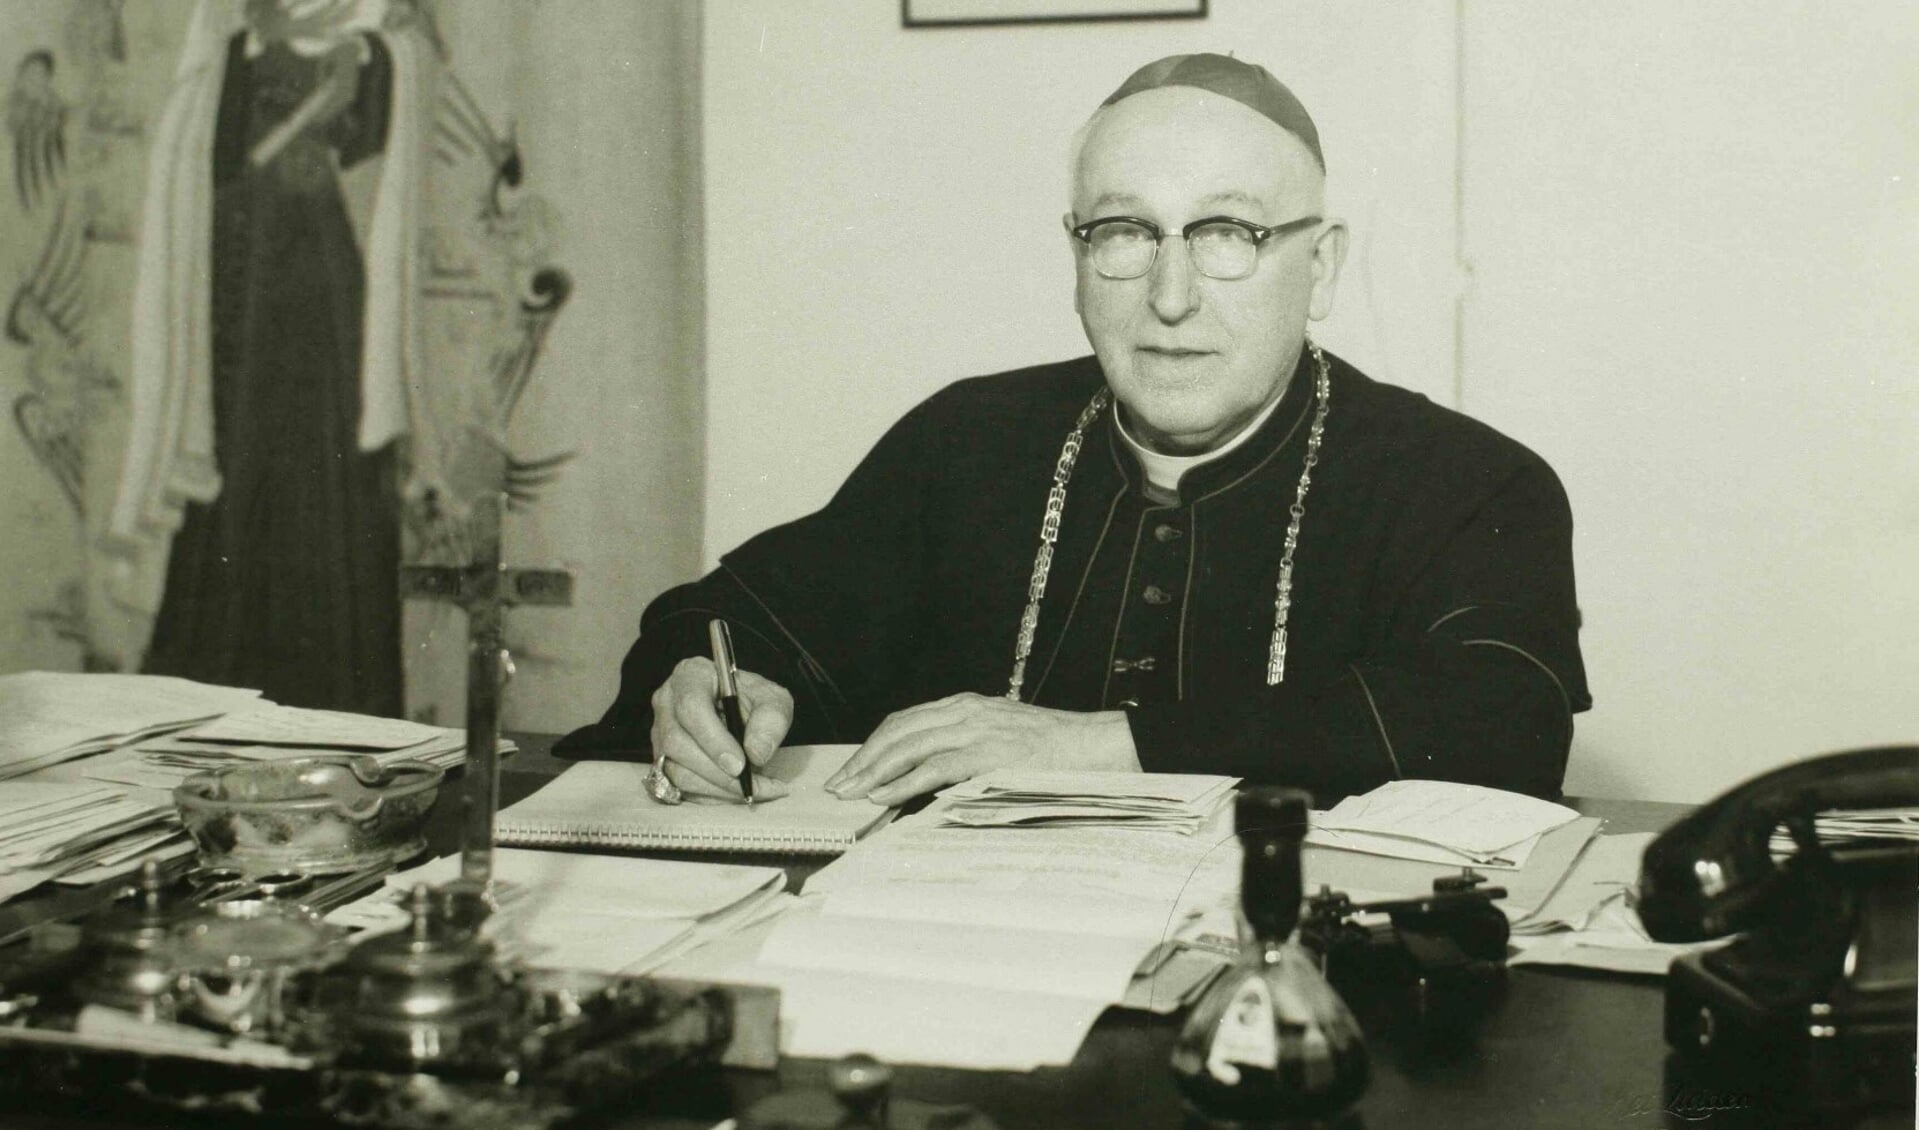 Wilhelmus Mutsaerts was als bisschop na de oorlog verantwoordelijk voor het herstel van kerken. 